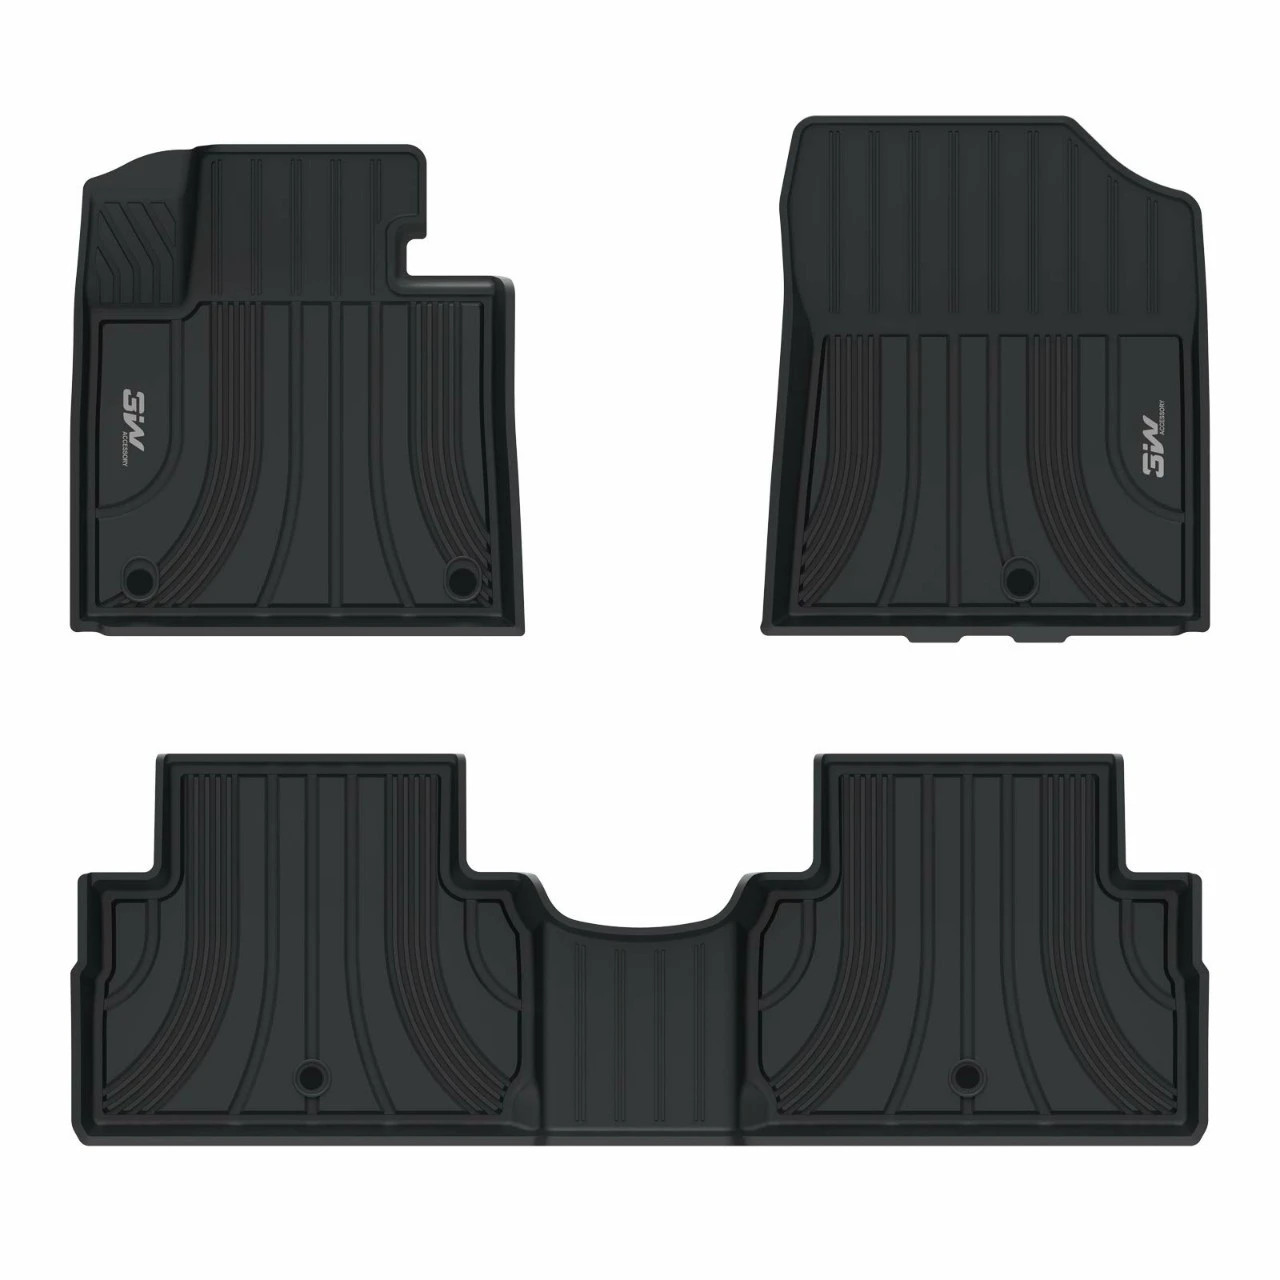 Thảm lót sàn xe ô tô Hyundai SantaFe 2019-đến nay Nhãn hiệu Macsim 3W chất liệu nhựa TPE đúc khuôn cao cấp - màu đen